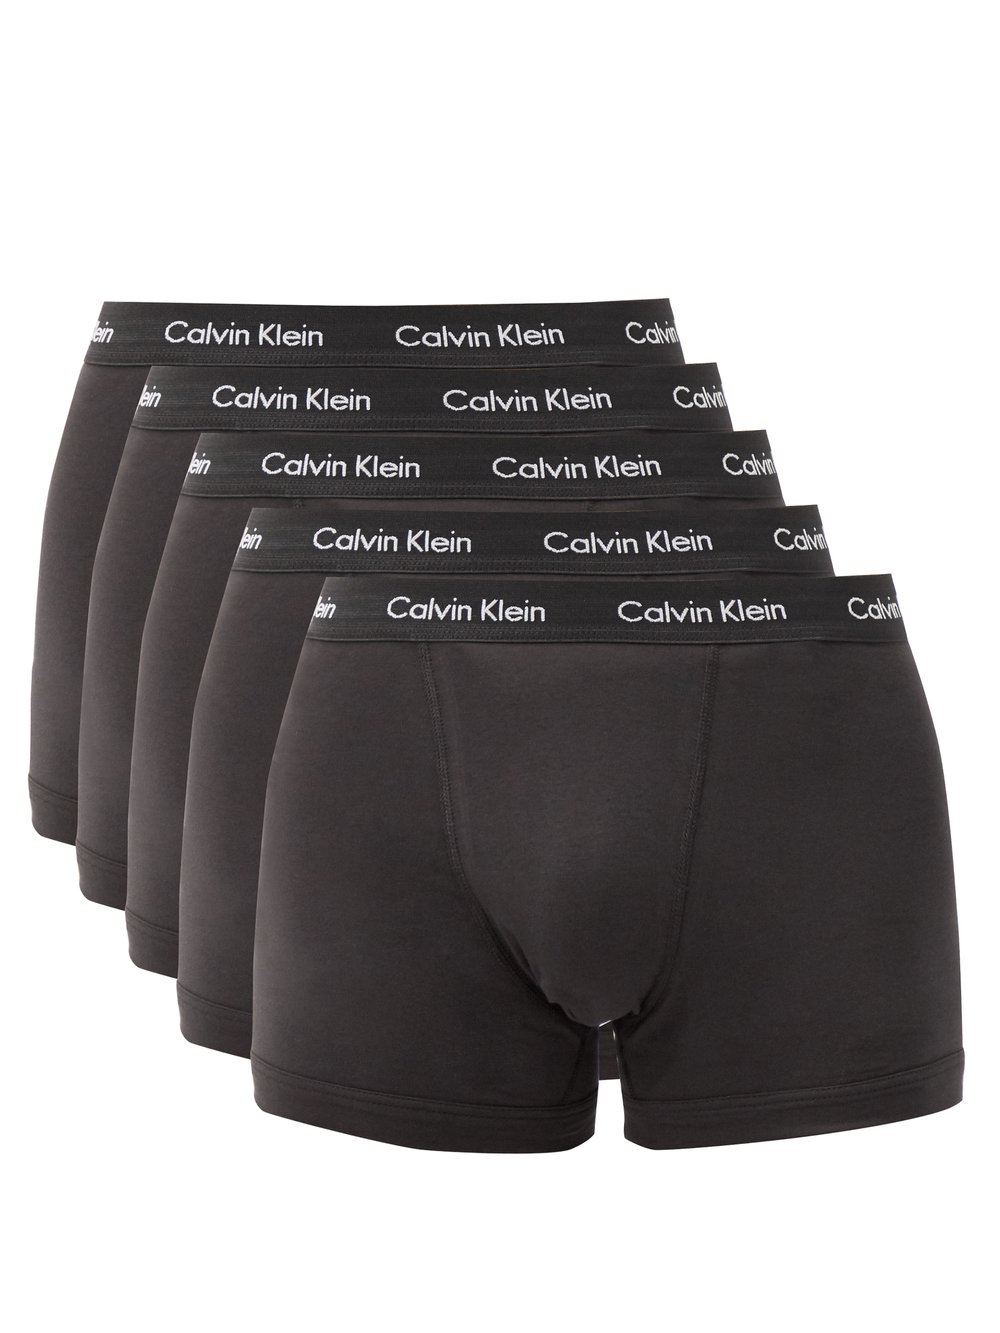 Комплект из пяти трусов-боксеров из смесового хлопка. Calvin Klein Underwear, черный